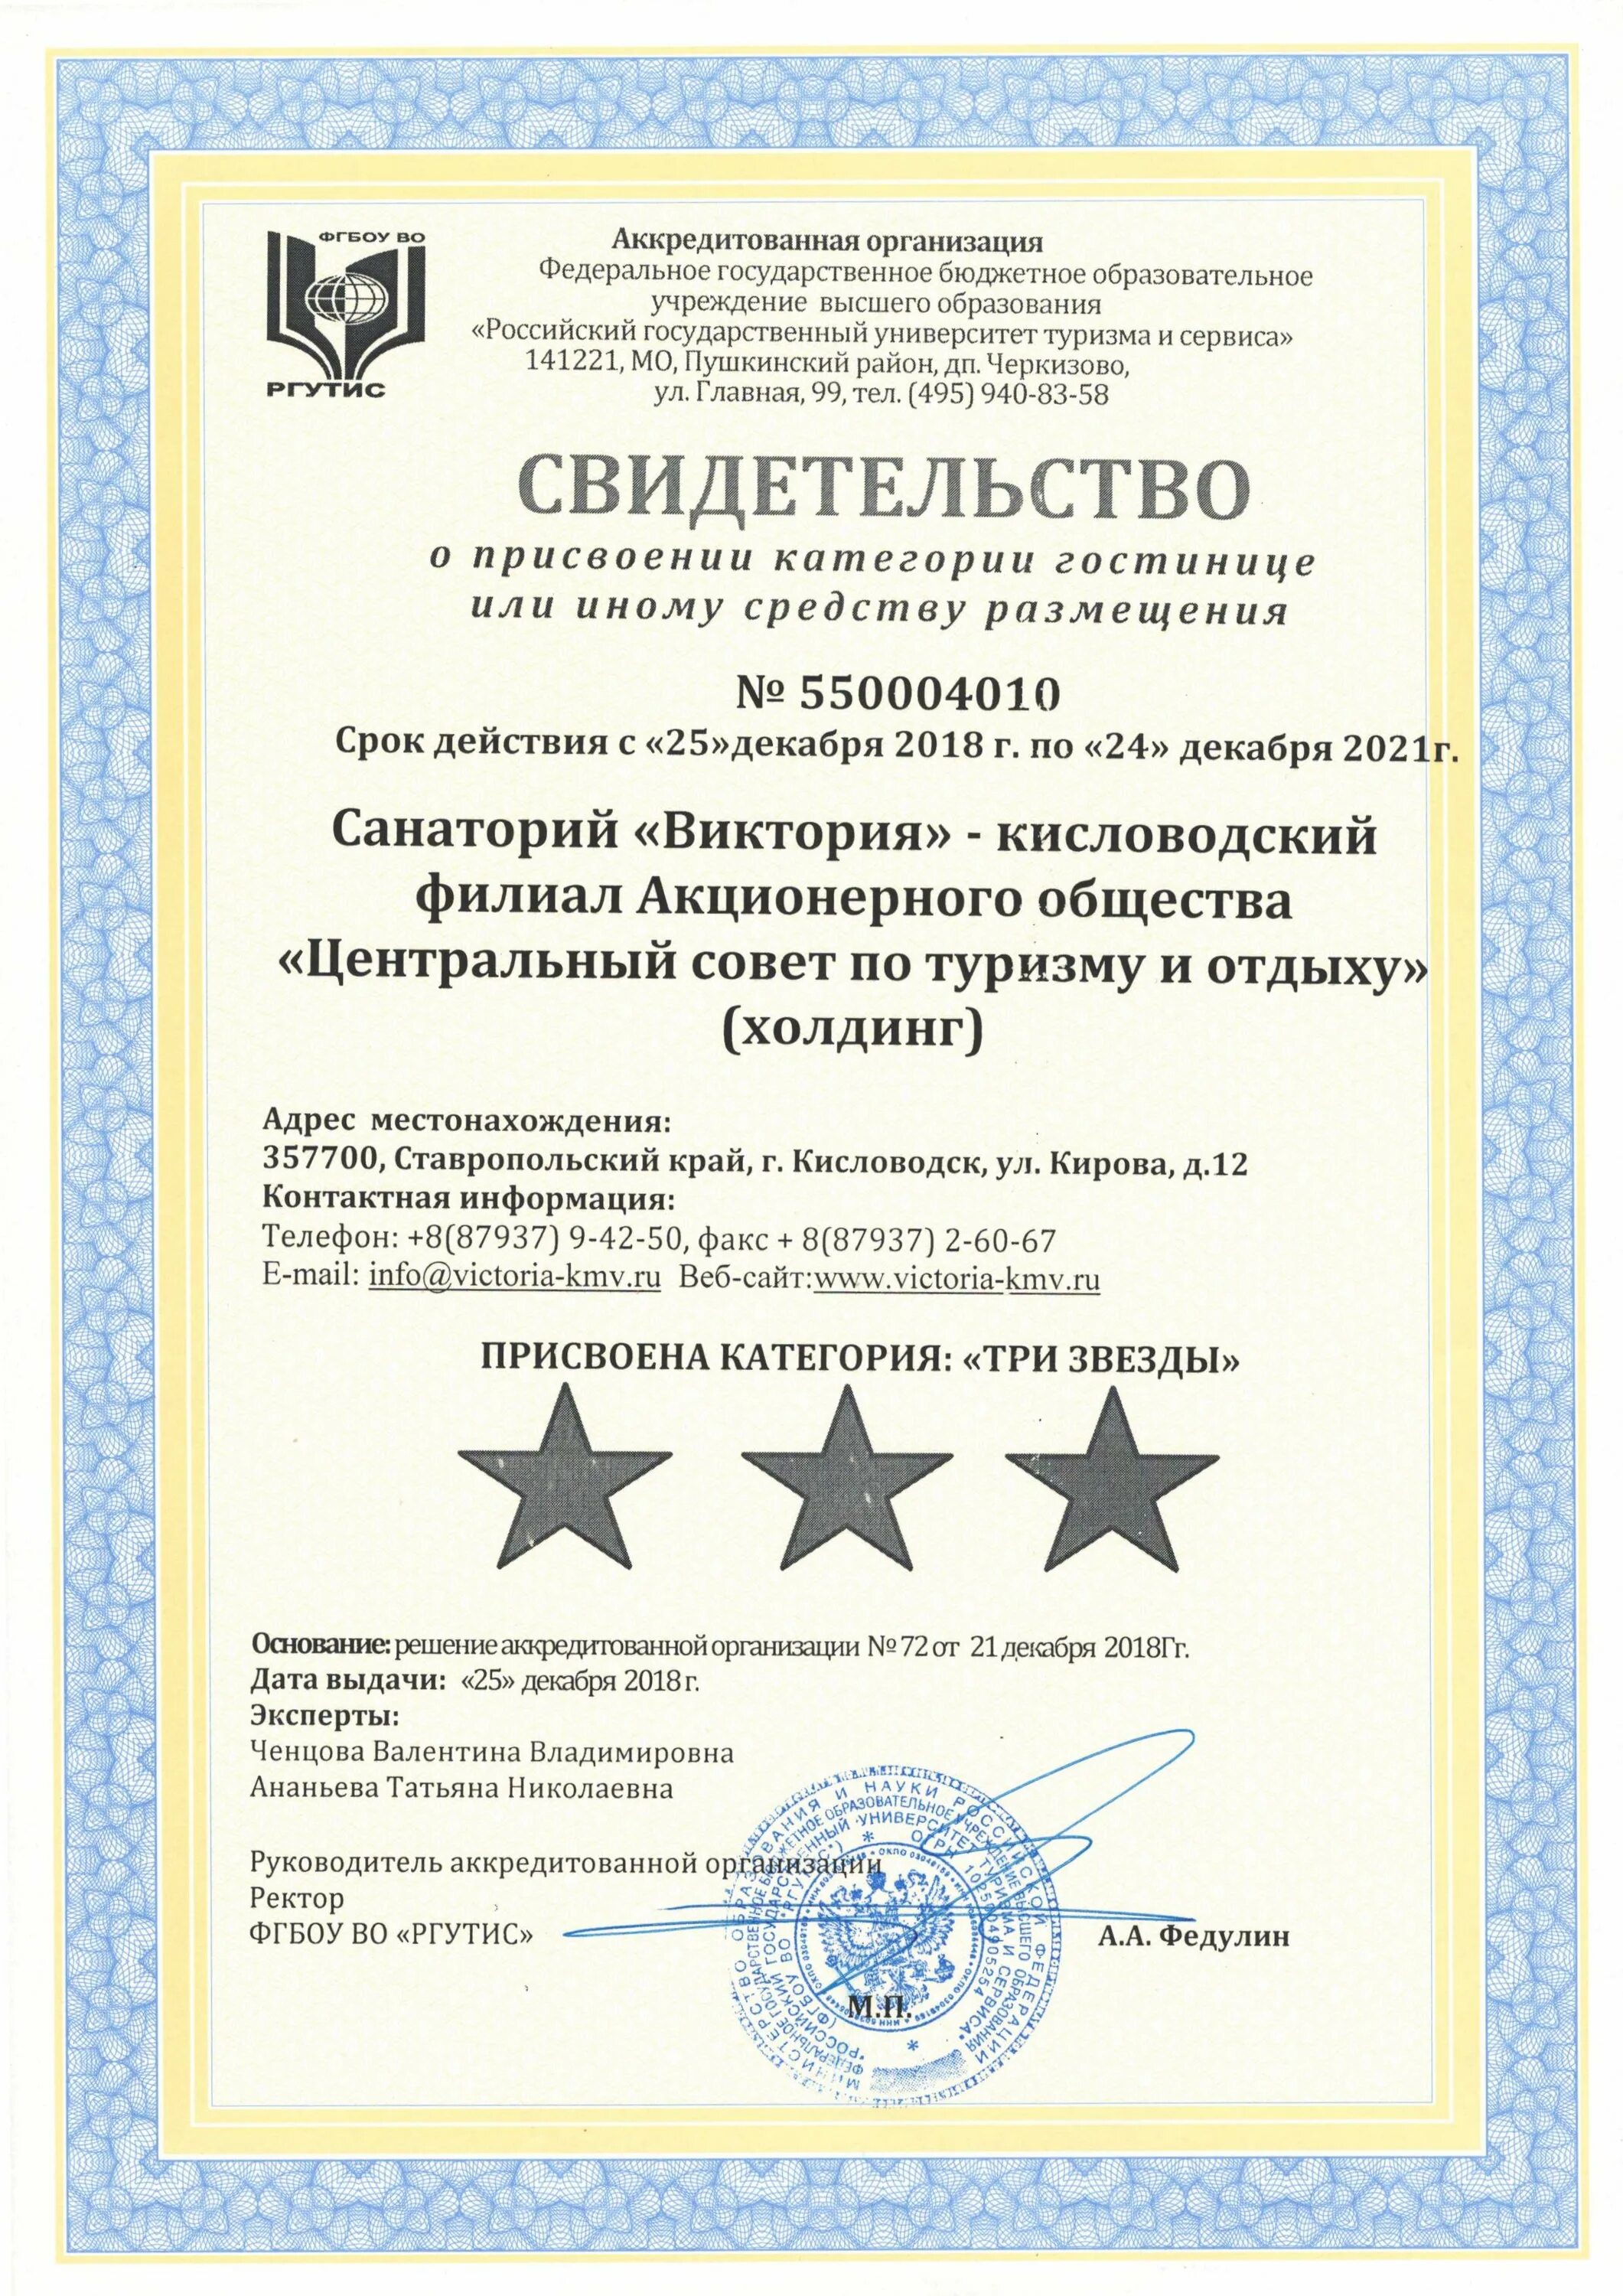 ЦСТЭ Холдинг. Сертификат о присвоении 3 звезды. Центр государственной сертификации